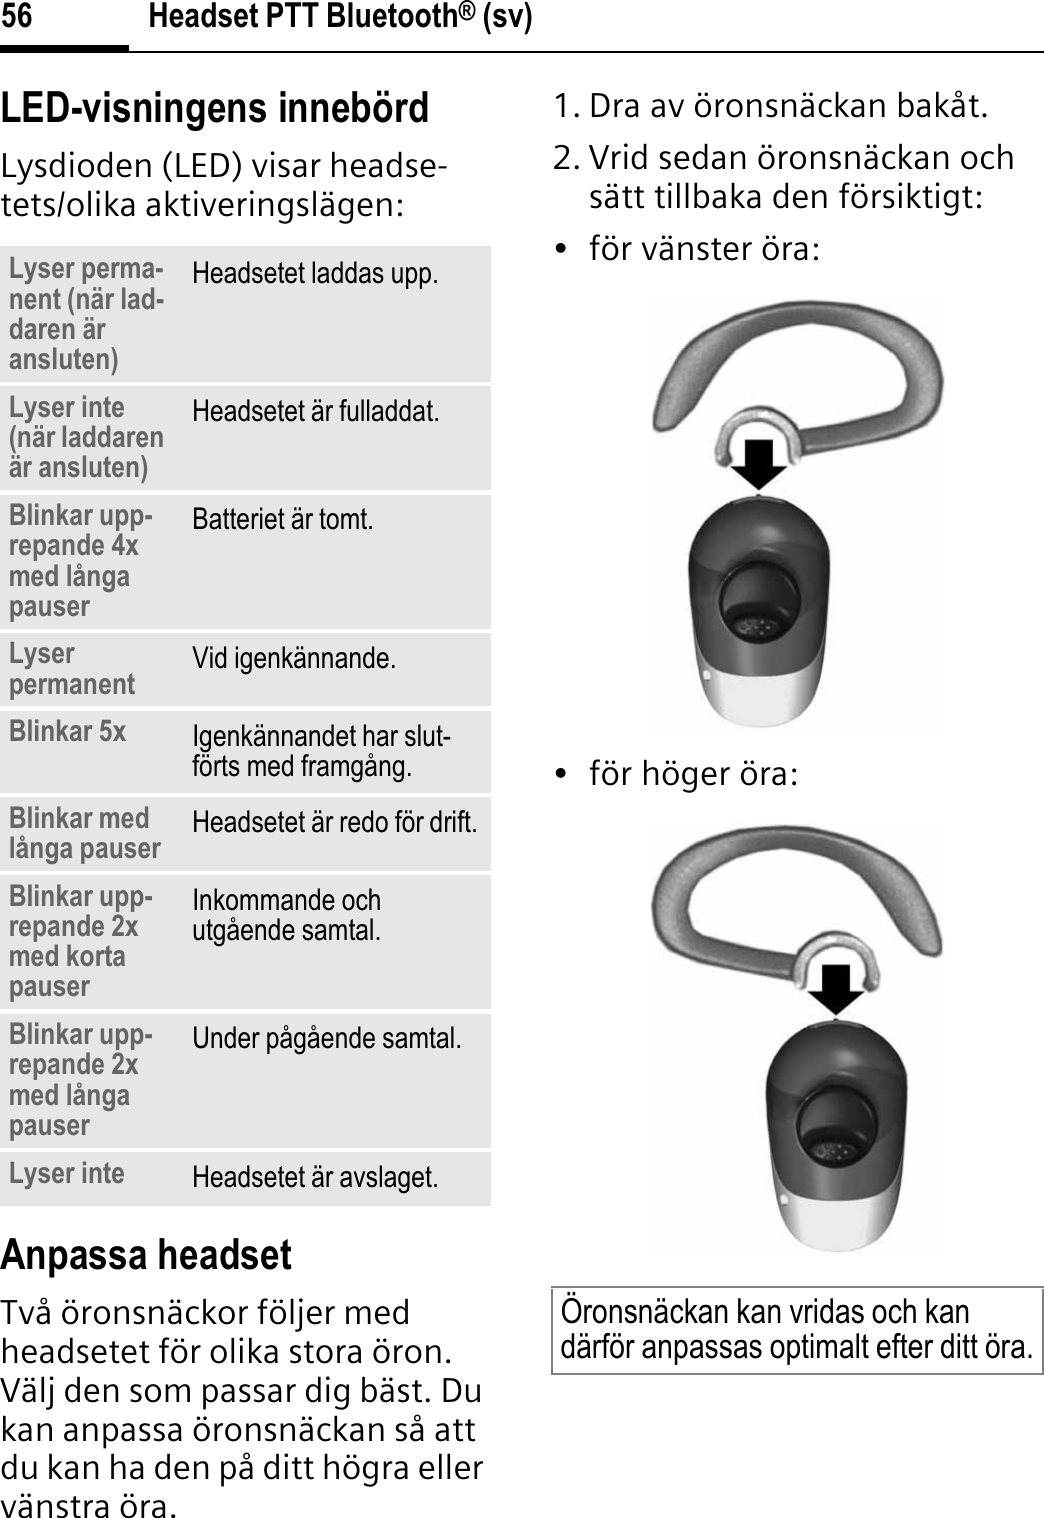 Headset PTT Bluetooth® (sv)56LED-visningens innebördLysdioden (LED) visar headse-tets/olika aktiveringslägen:Anpassa headsetTvå öronsnäckor följer med headsetet för olika stora öron. Välj den som passar dig bäst. Du kan anpassa öronsnäckan så att du kan ha den på ditt högra eller vänstra öra. 1. Dra av öronsnäckan bakåt.2. Vrid sedan öronsnäckan och sätt tillbaka den försiktigt:• för vänster öra:• för höger öra:Lyser perma-nent (när lad-daren är ansluten)Headsetet laddas upp.Lyser inte (när laddaren är ansluten)Headsetet är fulladdat.Blinkar upp-repande 4x med långa pauserBatteriet är tomt.Lyser permanent Vid igenkännande.Blinkar 5x Igenkännandet har slut-förts med framgång.Blinkar med långa pauser Headsetet är redo för drift.Blinkar upp-repande 2x med korta pauserInkommande och utgående samtal.Blinkar upp-repande 2x med långa pauserUnder pågående samtal.Lyser inte Headsetet är avslaget.Öronsnäckan kan vridas och kan därför anpassas optimalt efter ditt öra.